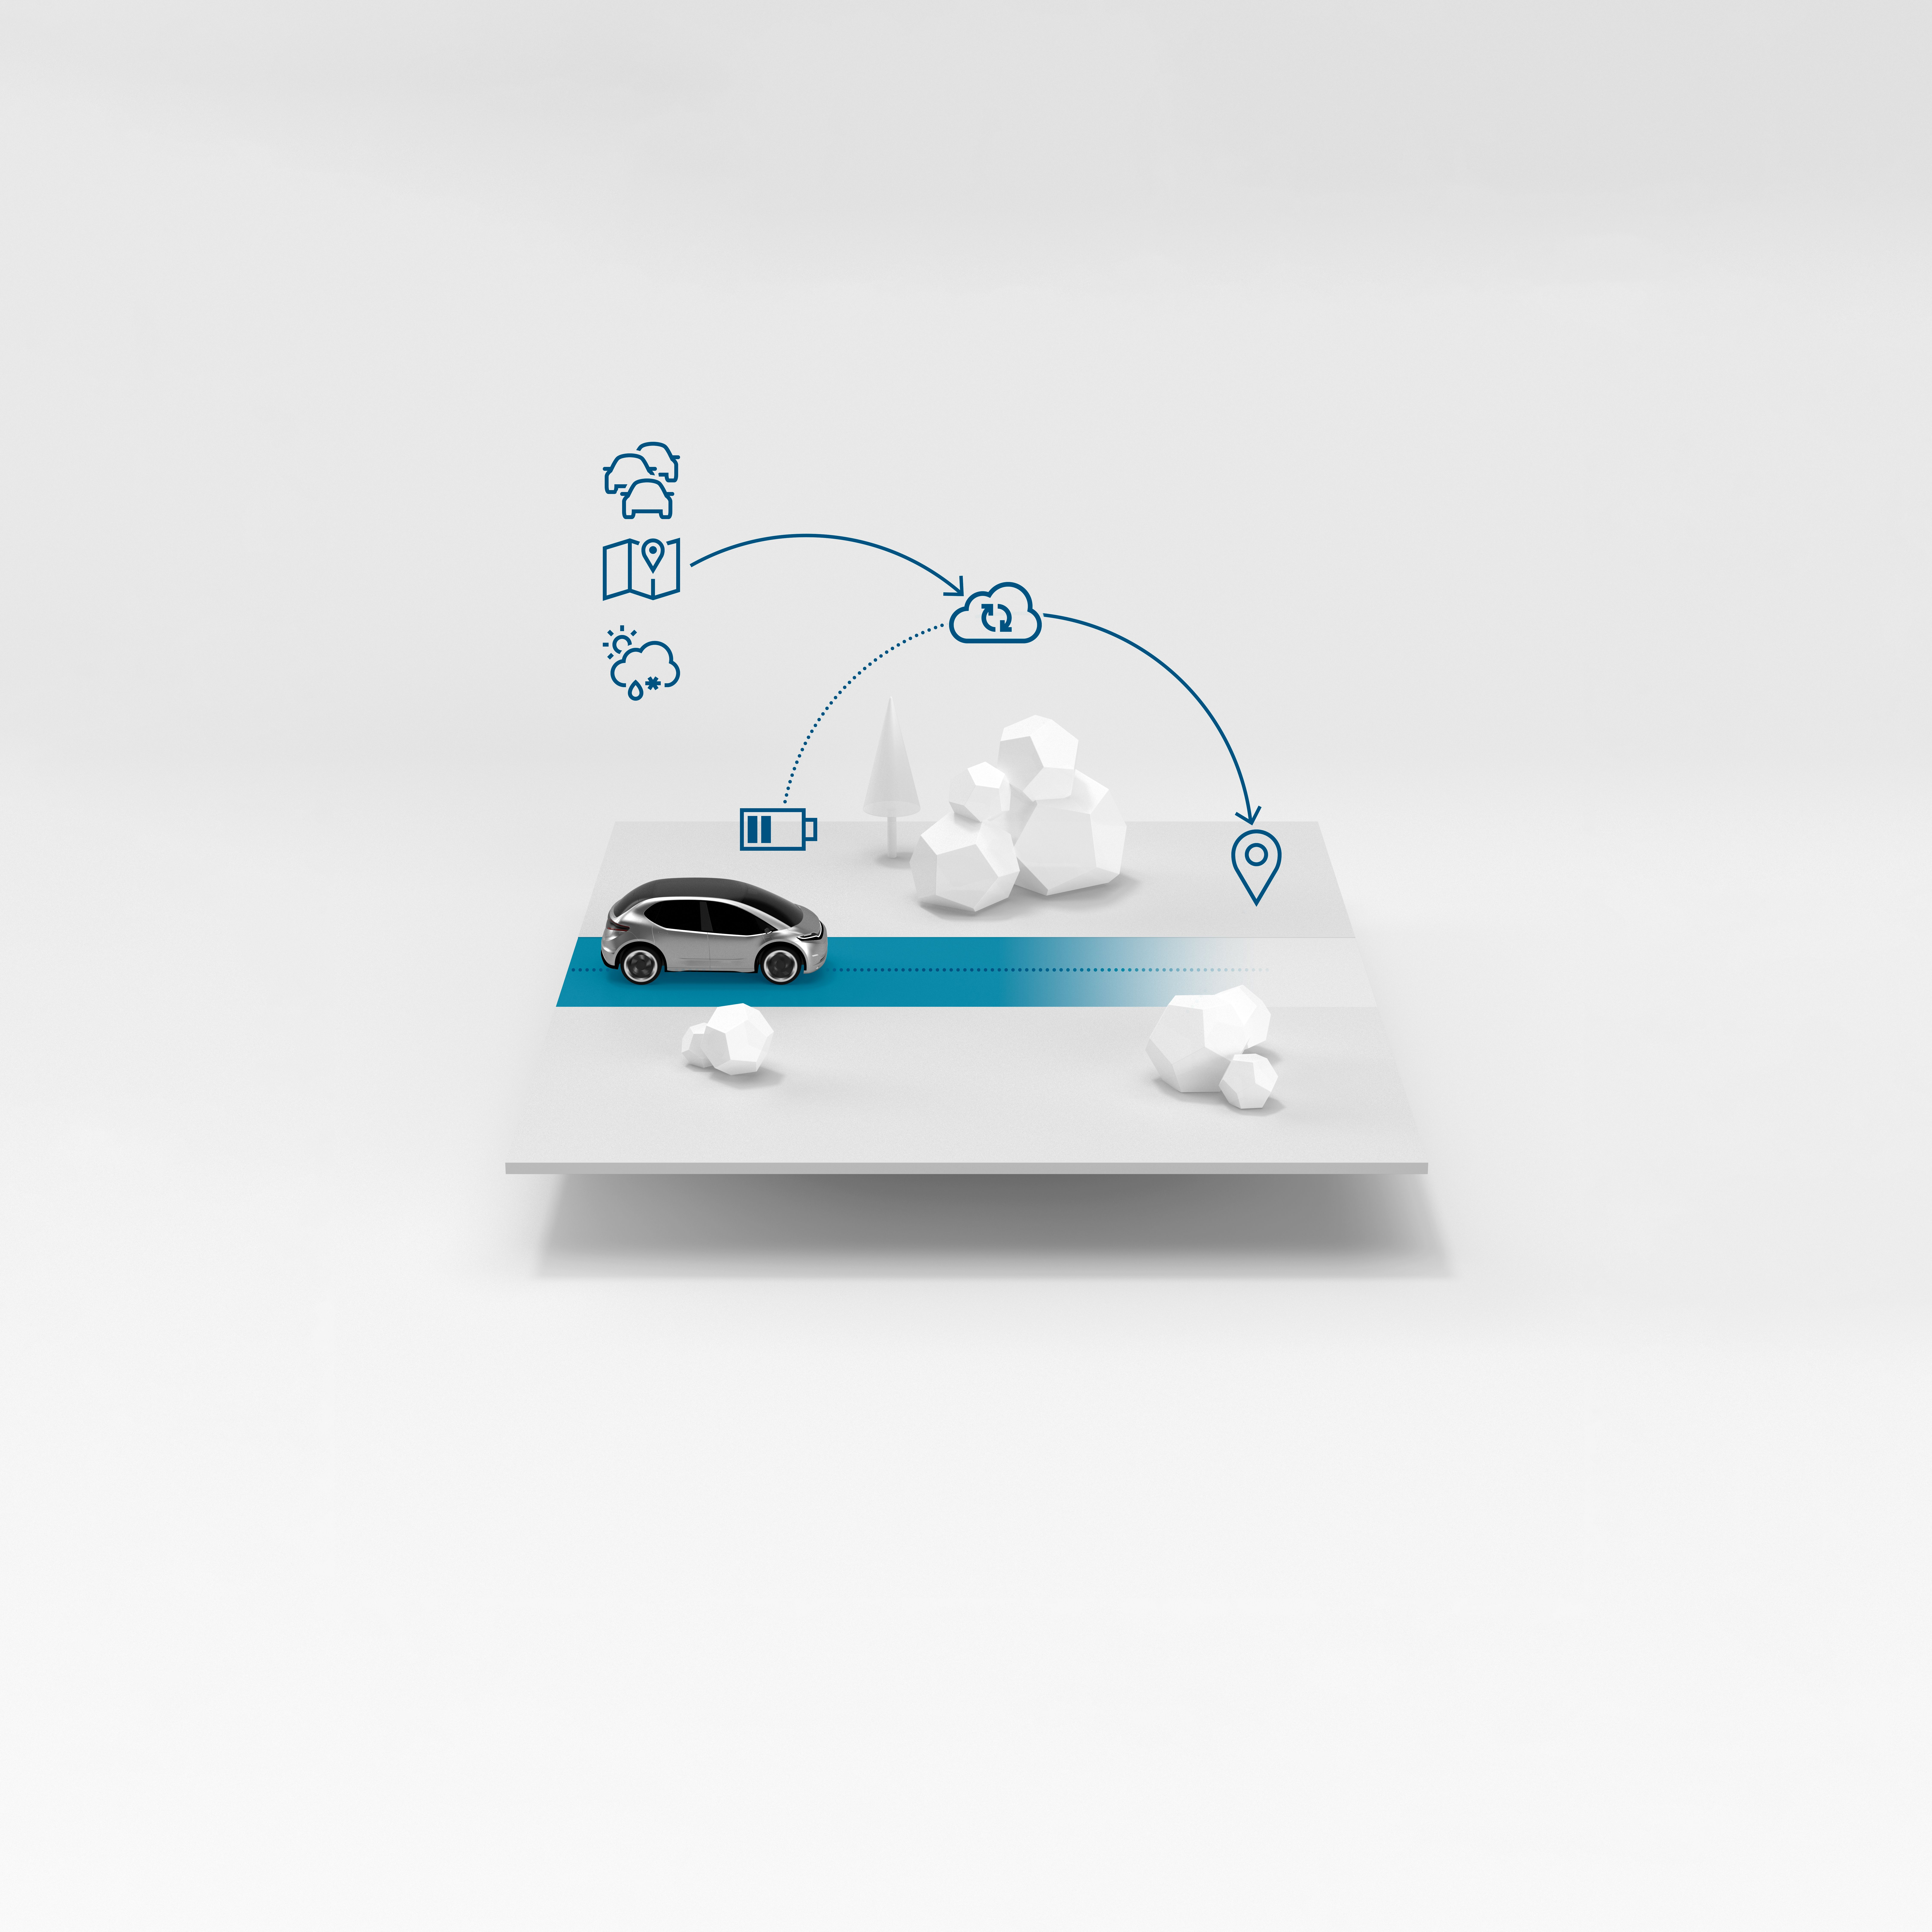 Hardware, software e servizi: Bosch offre soluzioni intelligenti per la mobilità basata su software